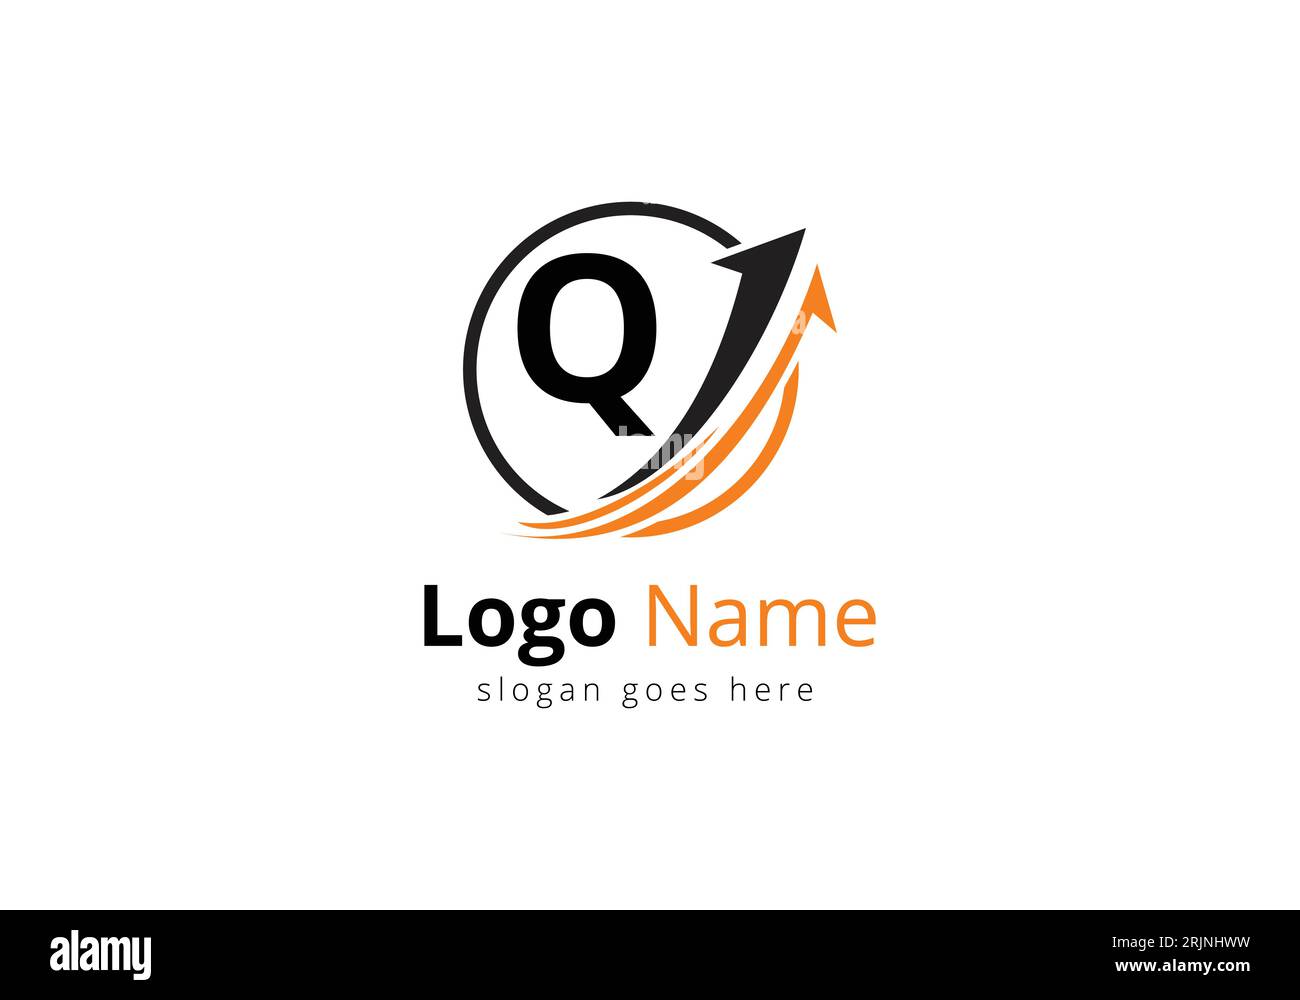 Logo de financement avec concept de lettre Q. Concept de logo financier ou de réussite. Logo pour l'entreprise comptable et l'identité de l'entreprise Illustration de Vecteur